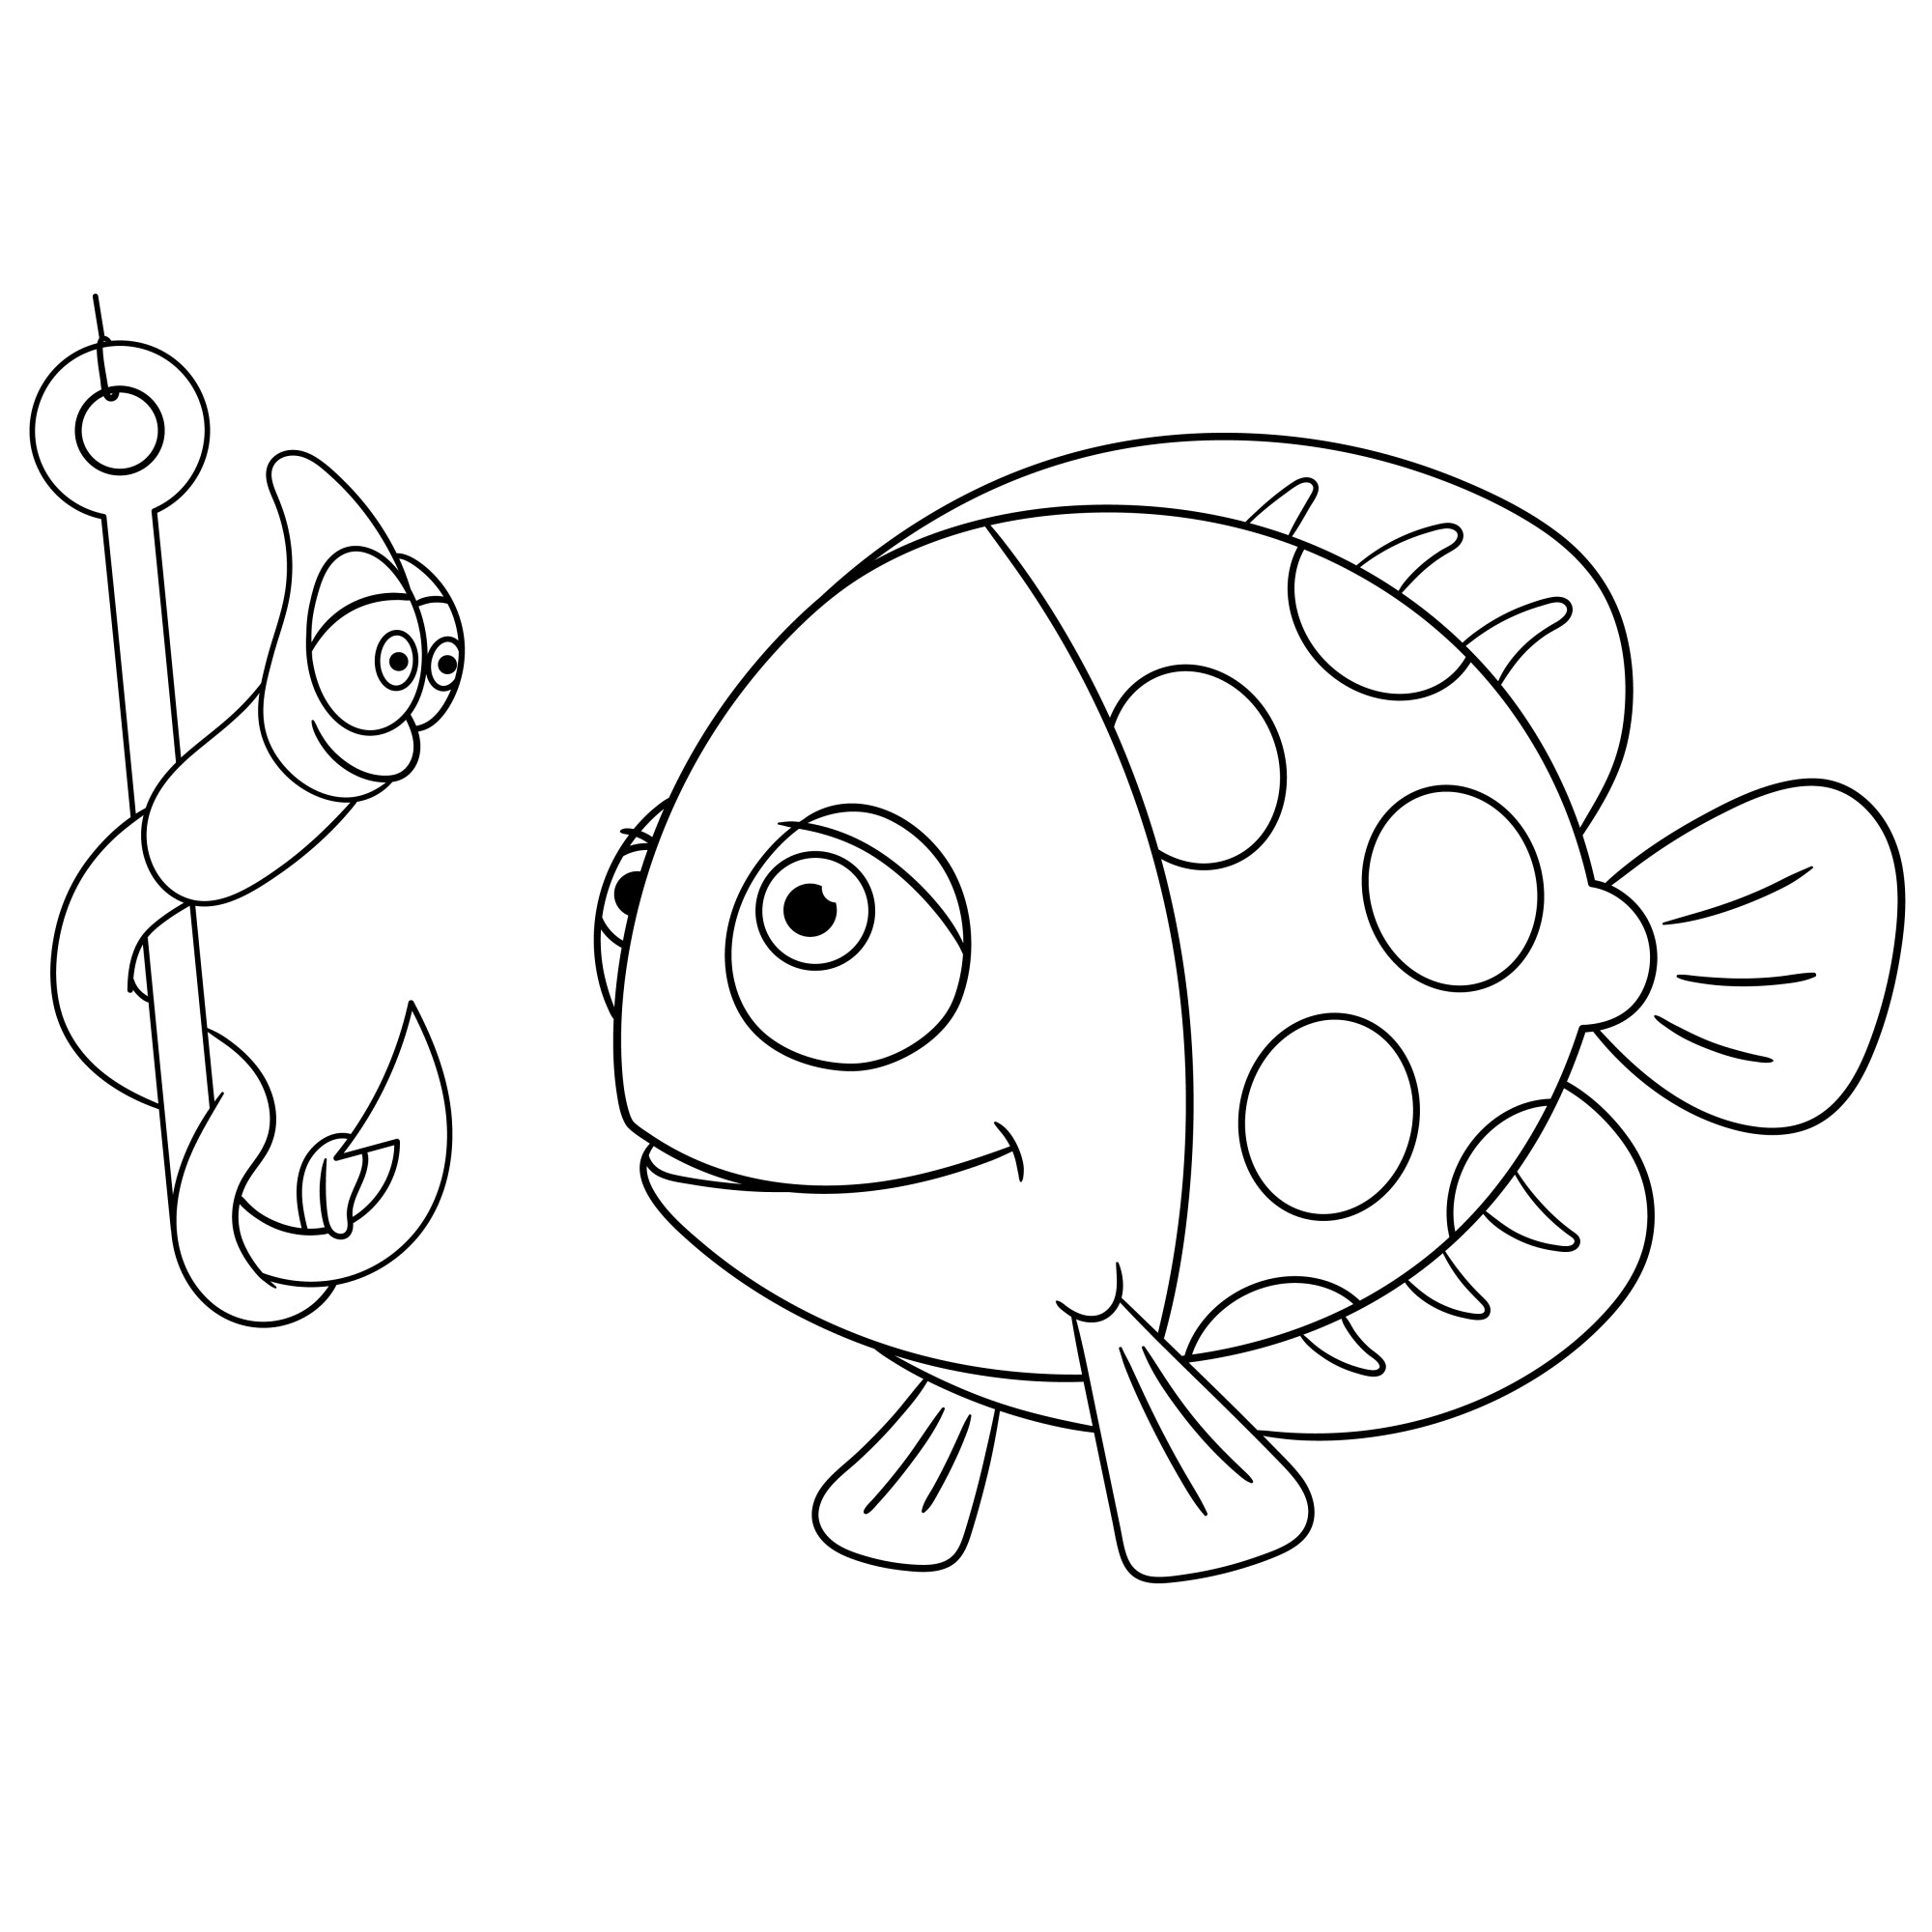 Раскраска для детей: милая рыба и червь на рыболовном крючке